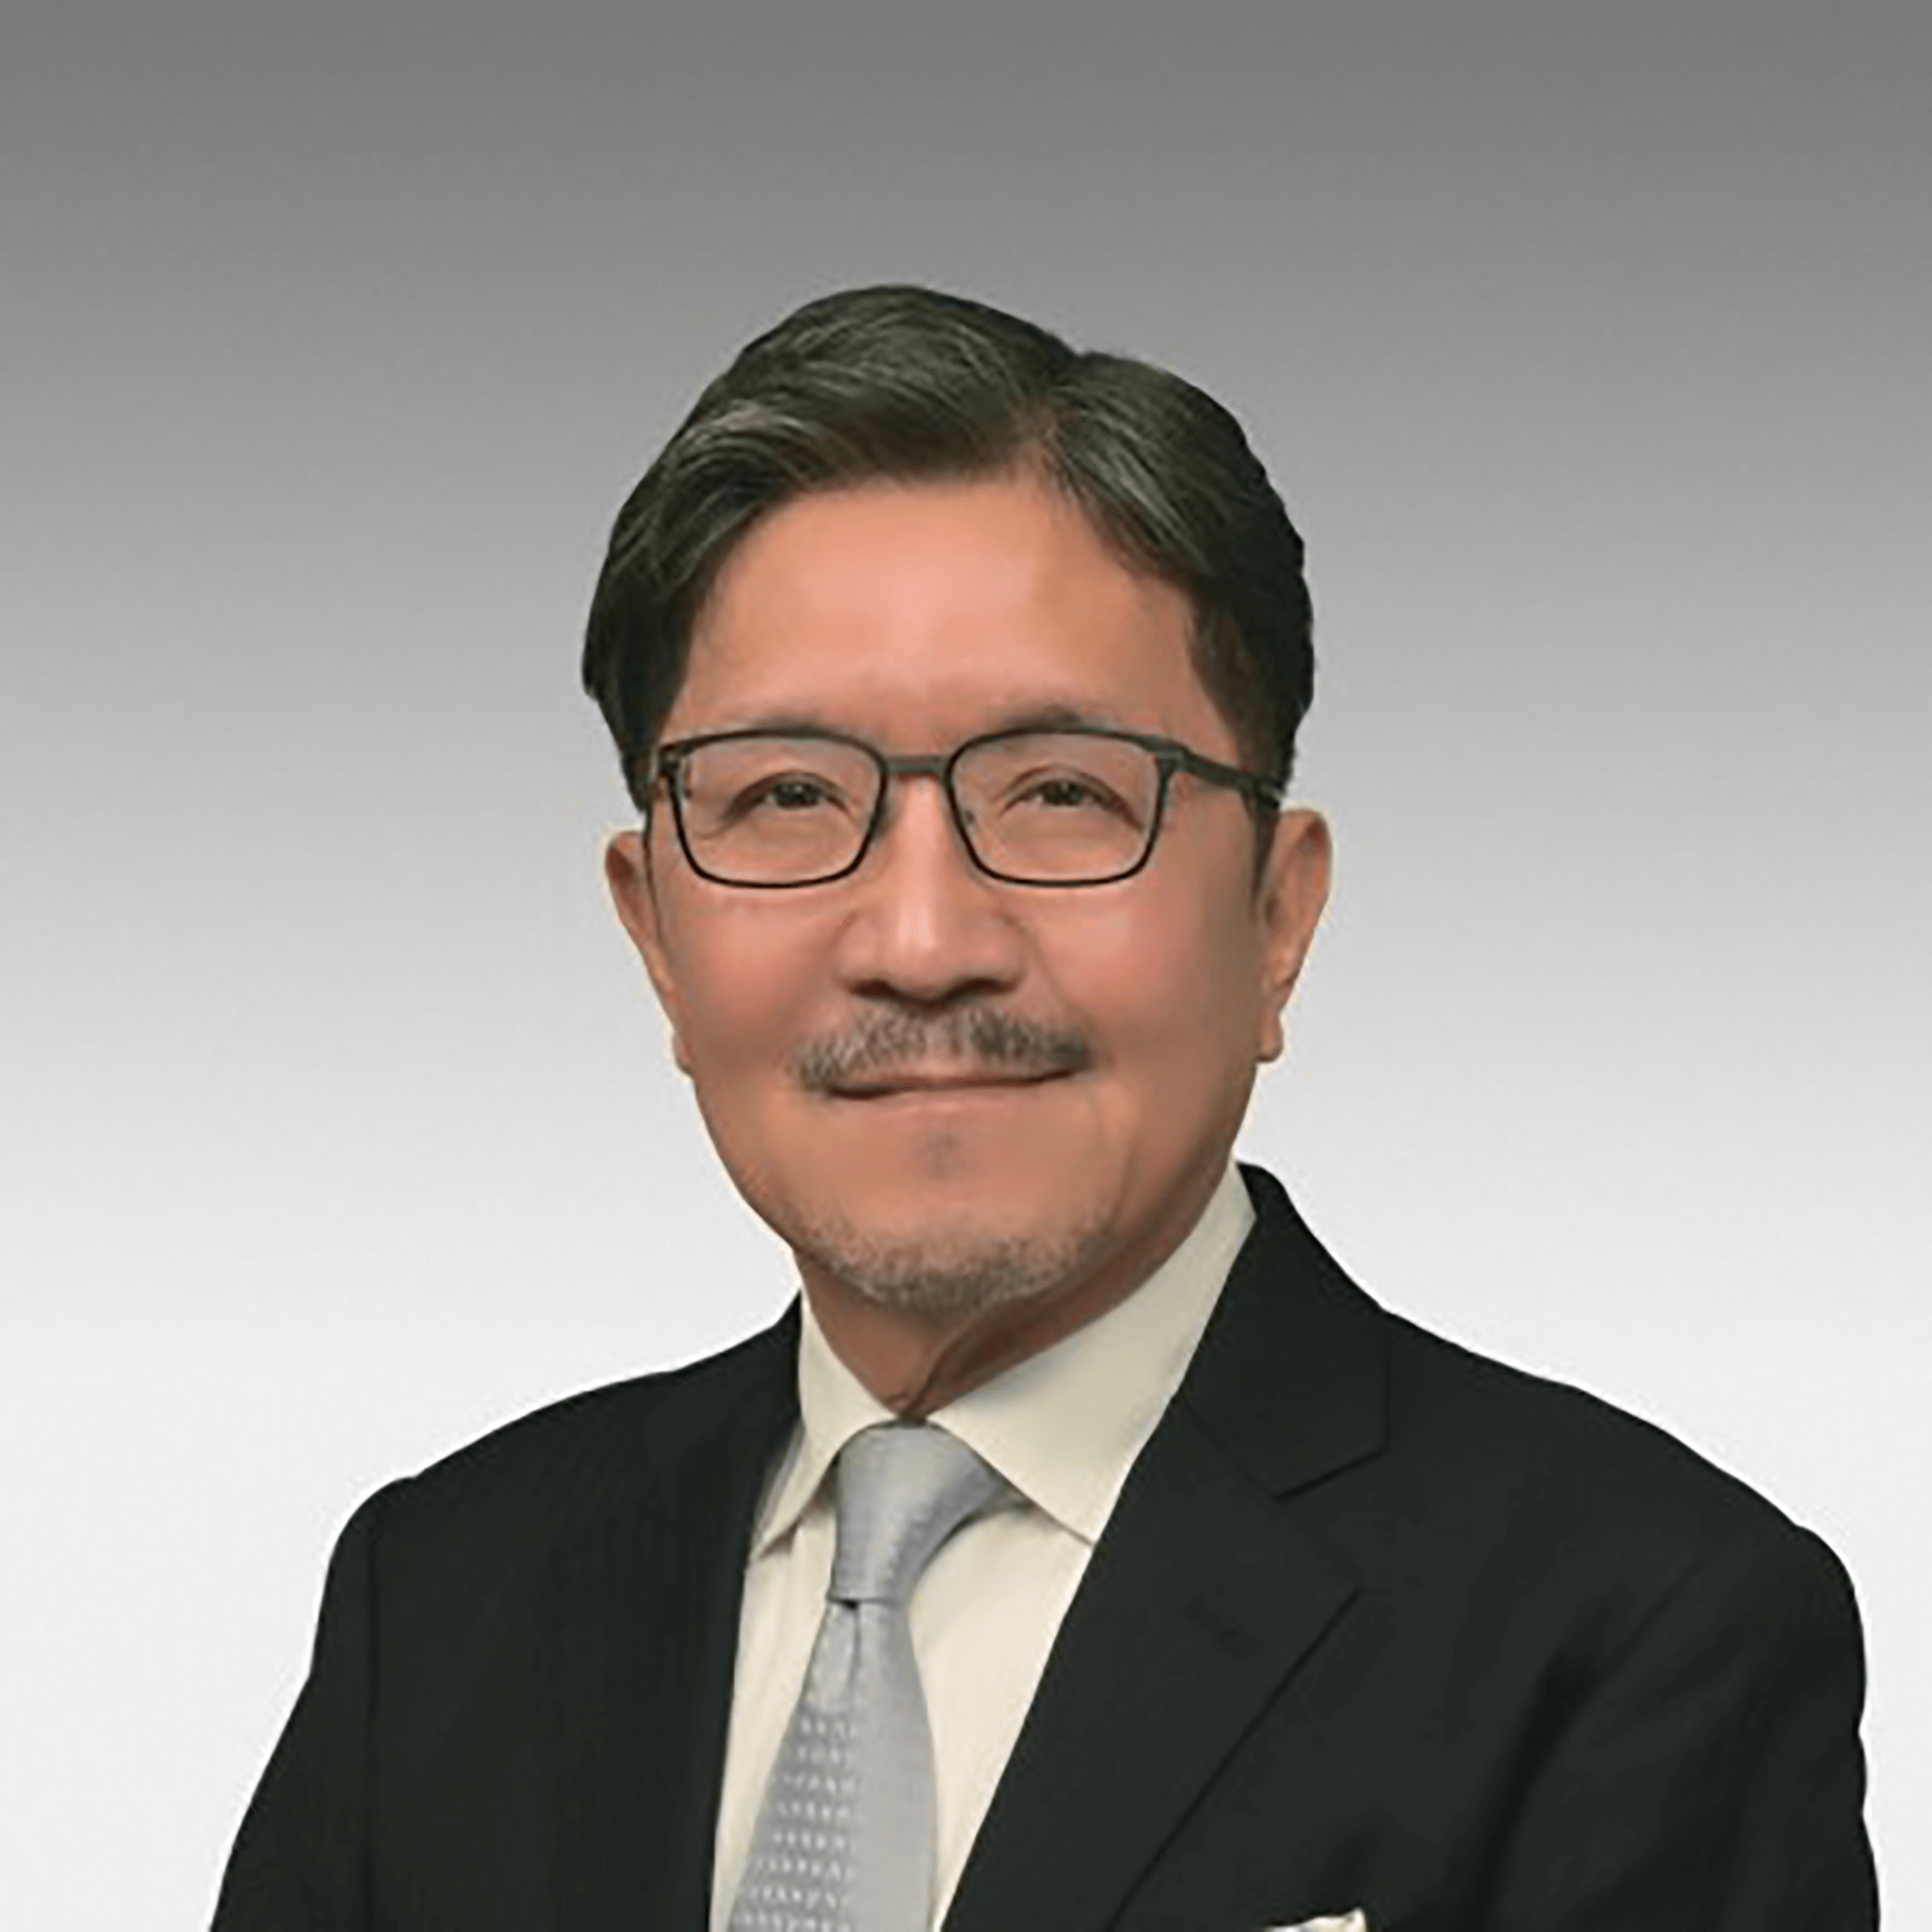 Masuhiro Yoshitake (Max Yoshitake), President & CEO